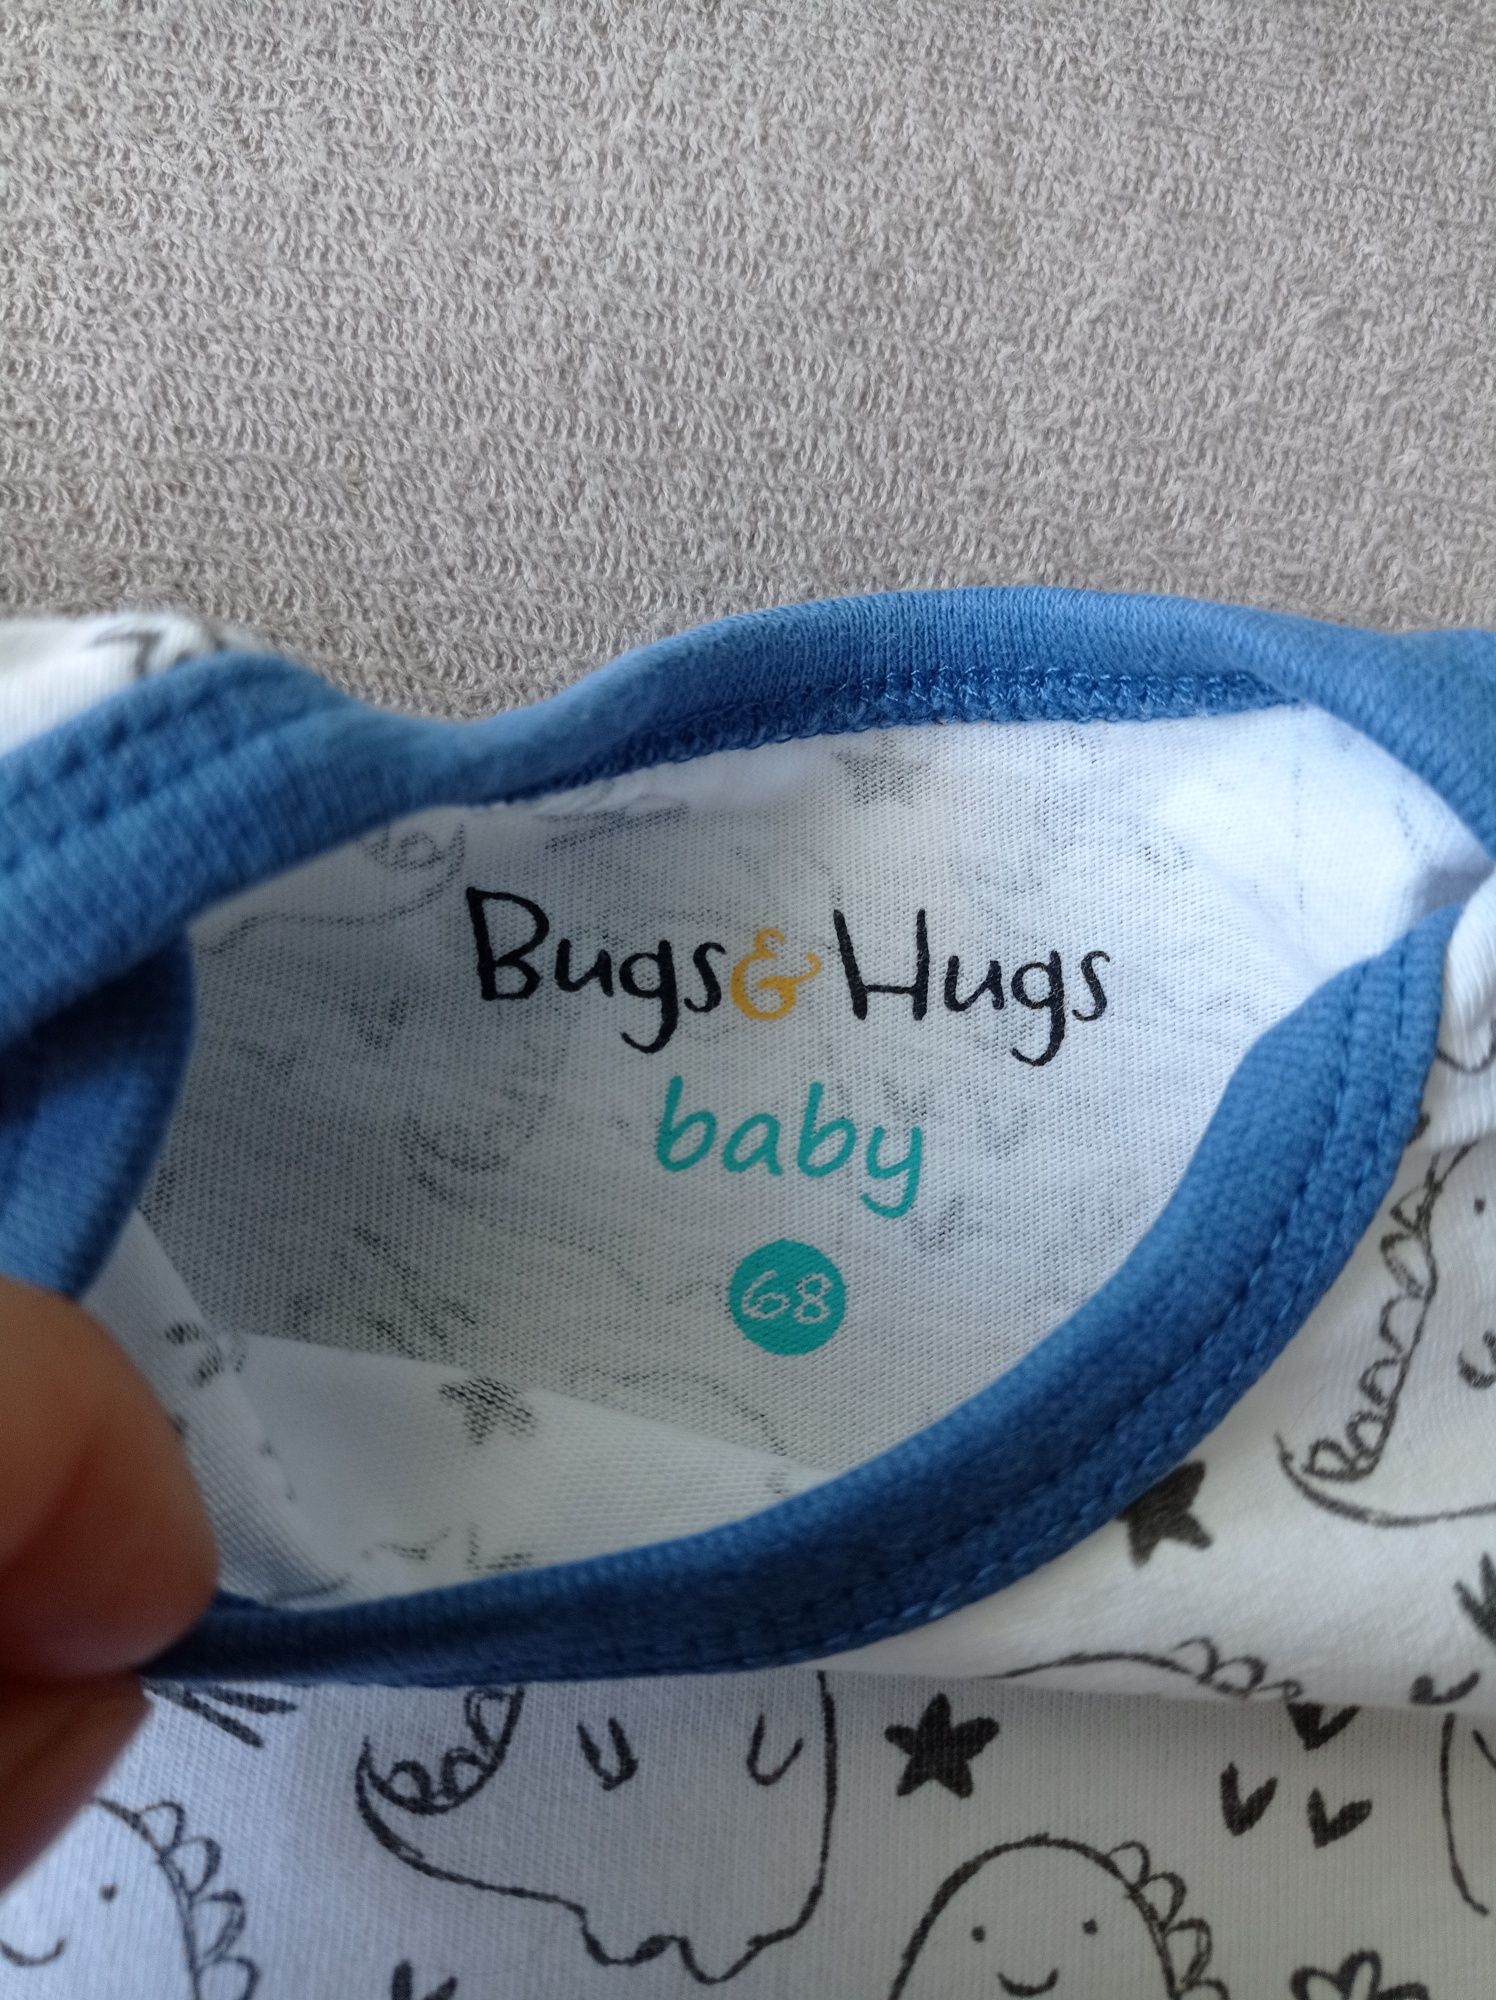 Body niemowlęce krótki rękaw, rozmiar 68, Bugs&Hugs, koszulka